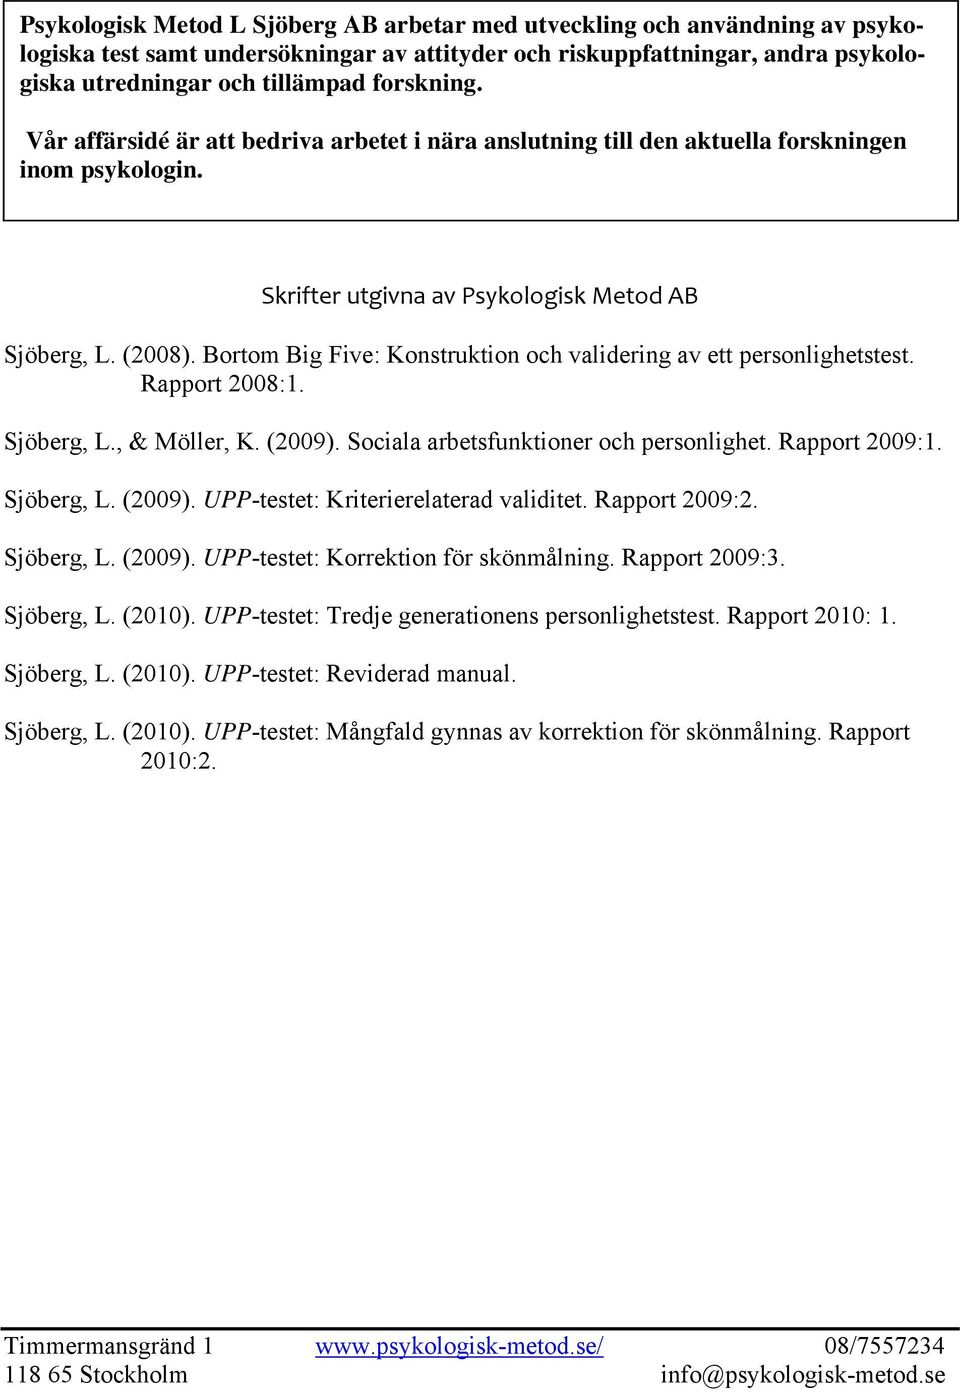 Bortom Big Five: Konstruktion och validering av ett personlighetstest. Rapport 2008:1. Sjöberg, L., & Möller, K. (2009). Sociala arbetsfunktioner och personlighet. Rapport 2009:1. Sjöberg, L. (2009). UPP-testet: Kriterierelaterad validitet.